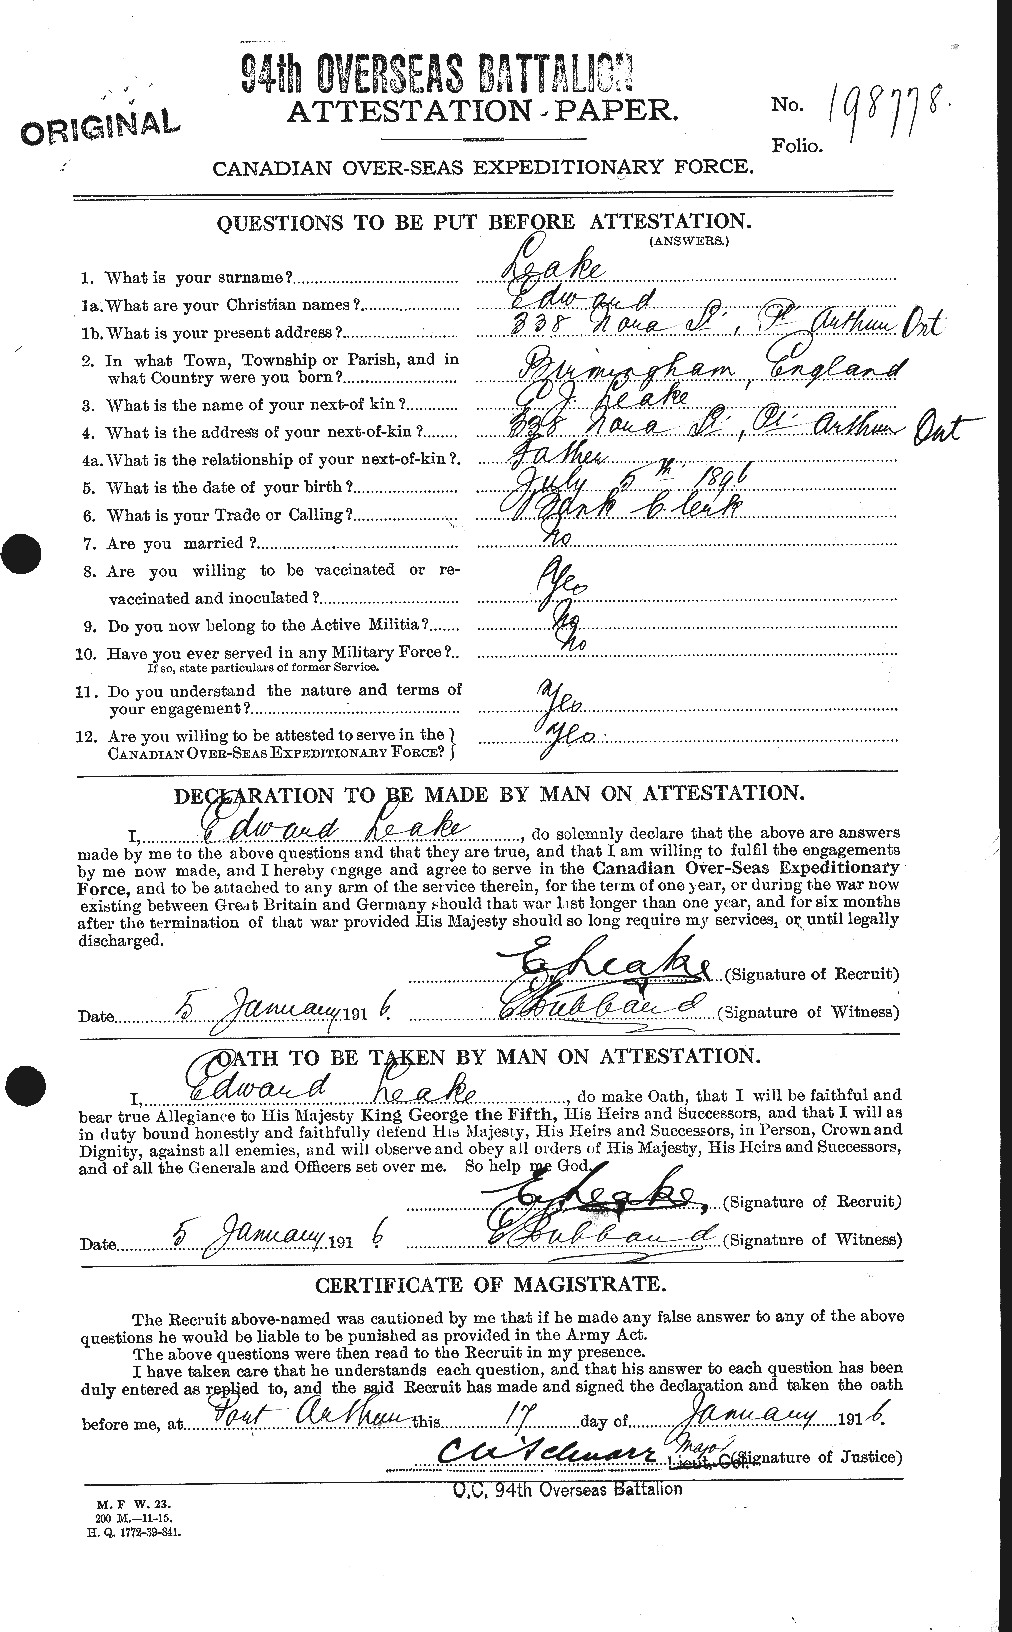 Dossiers du Personnel de la Première Guerre mondiale - CEC 455977a